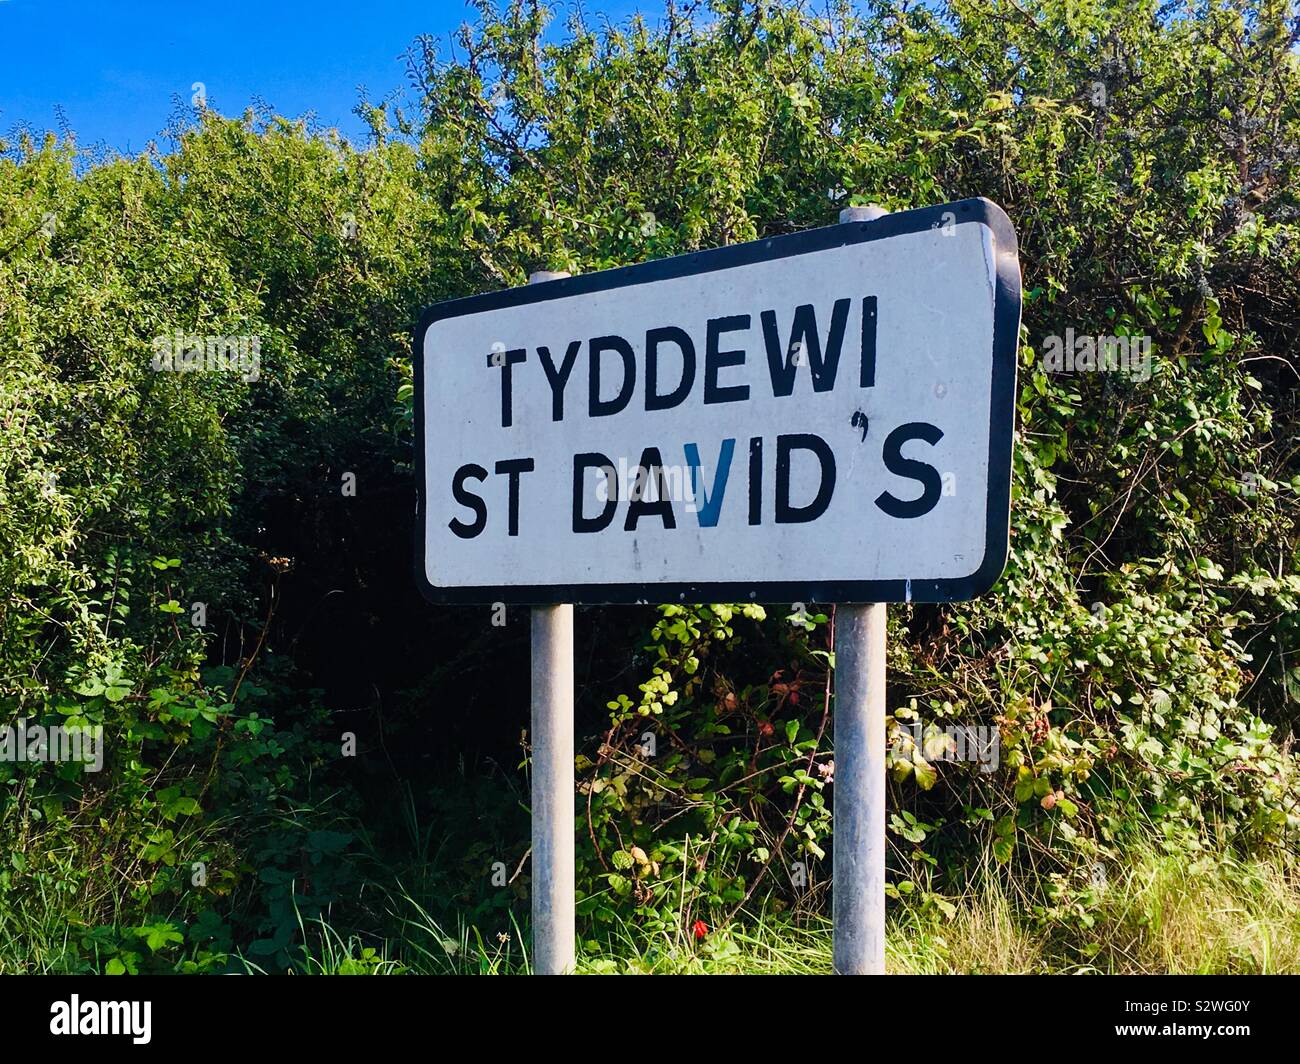 Panneau routier bilingue pour St David's dans la région de Pembrokeshire, Pays de Galles de l'Ouest. Anglais et Gallois Banque D'Images